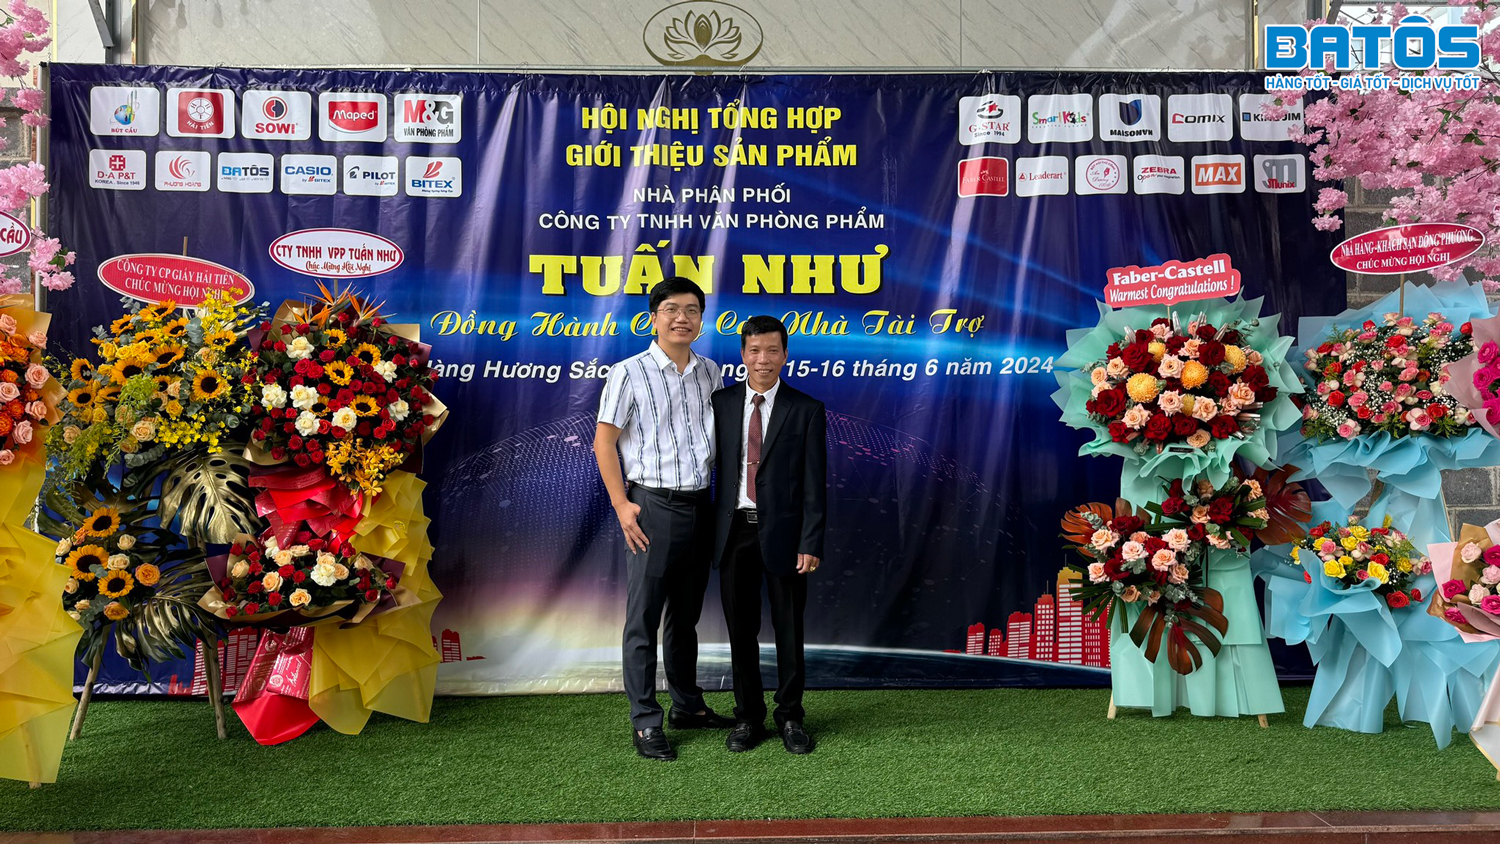 Chúc mừng hội nghị khách hàng NPP Tuấn Như - Lâm Đồng thành công rực rỡ